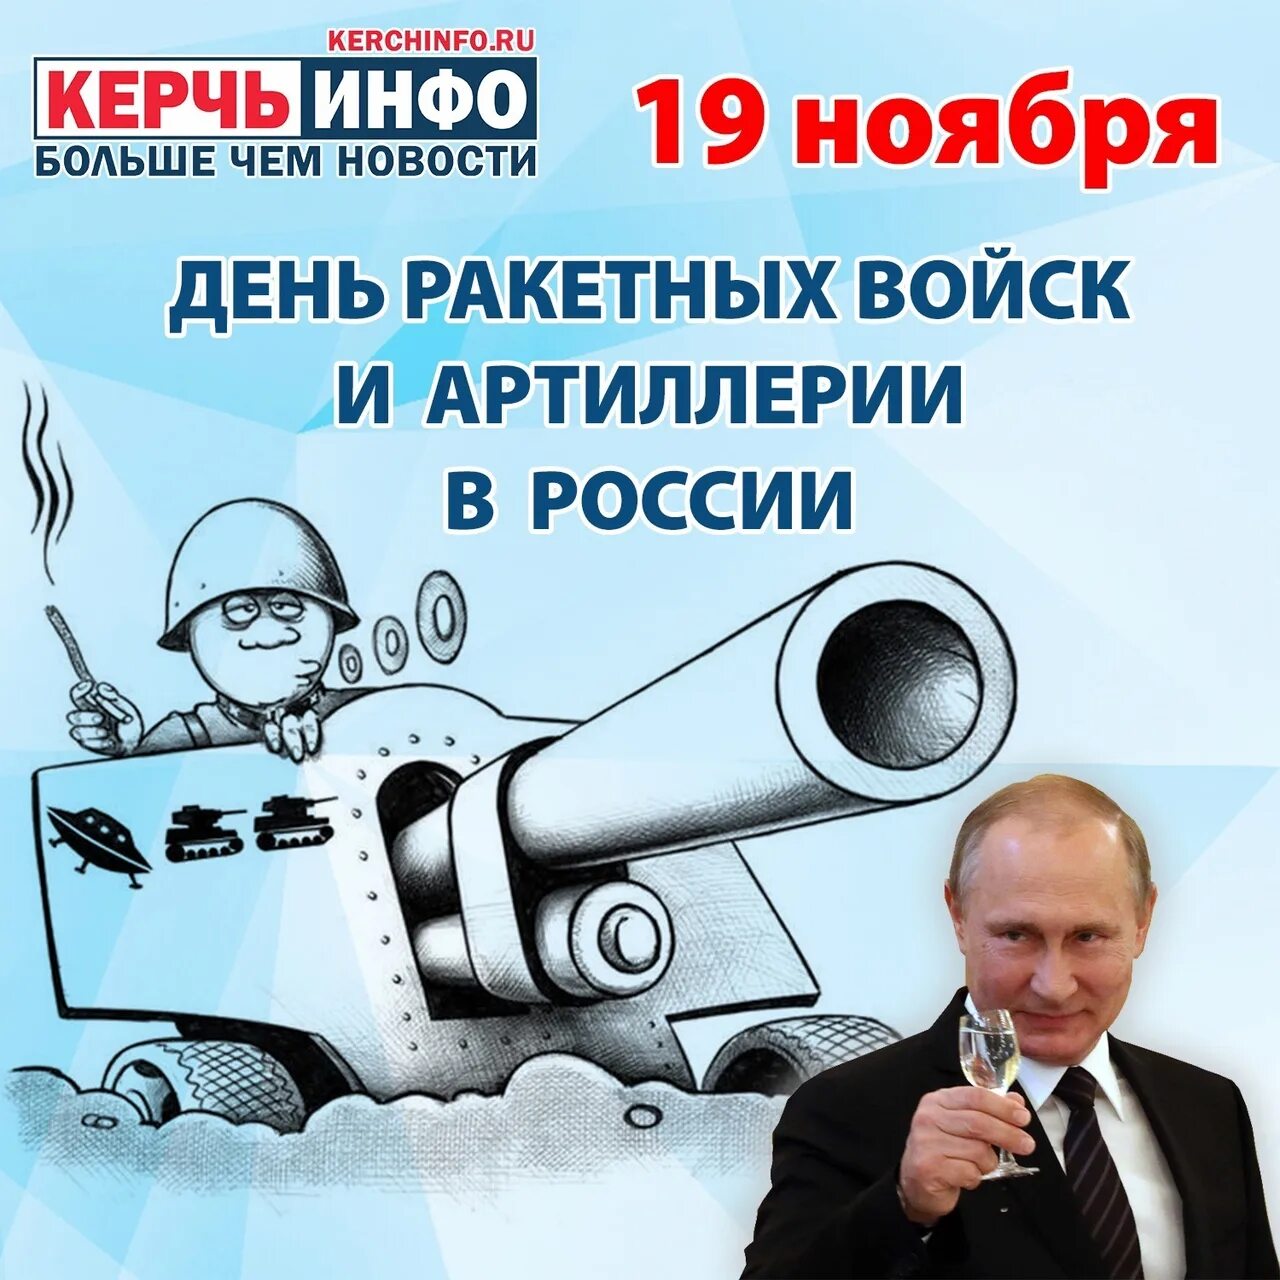 19 ноября день артиллерии и ракетных. День РВИА 19 ноября. 19 Ноября день ракетных войск и артиллерии в России.